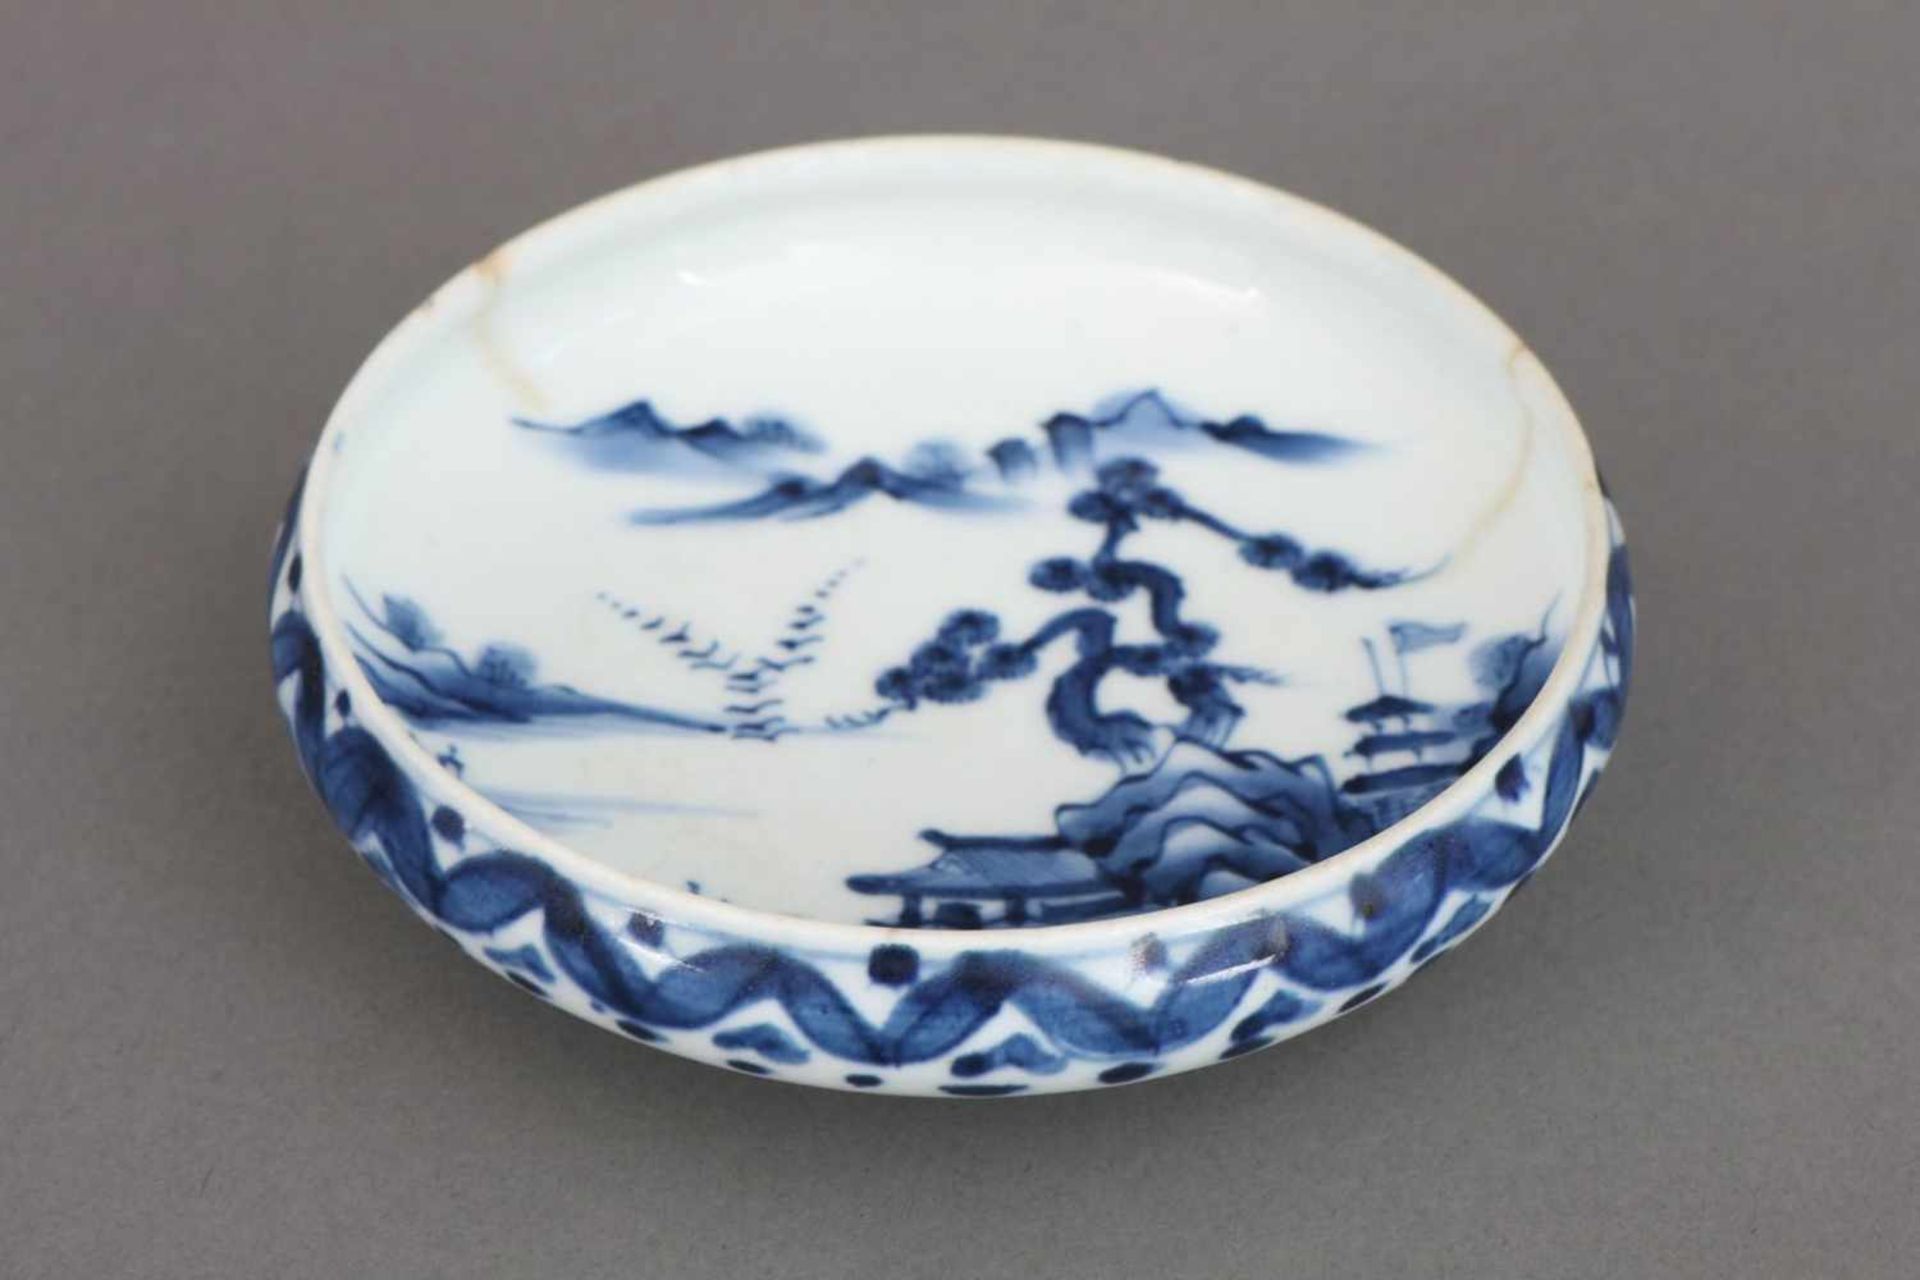 Chinesische Porzellanschalerunde Schale auf kurzem Standring, hell glasiert, blaue